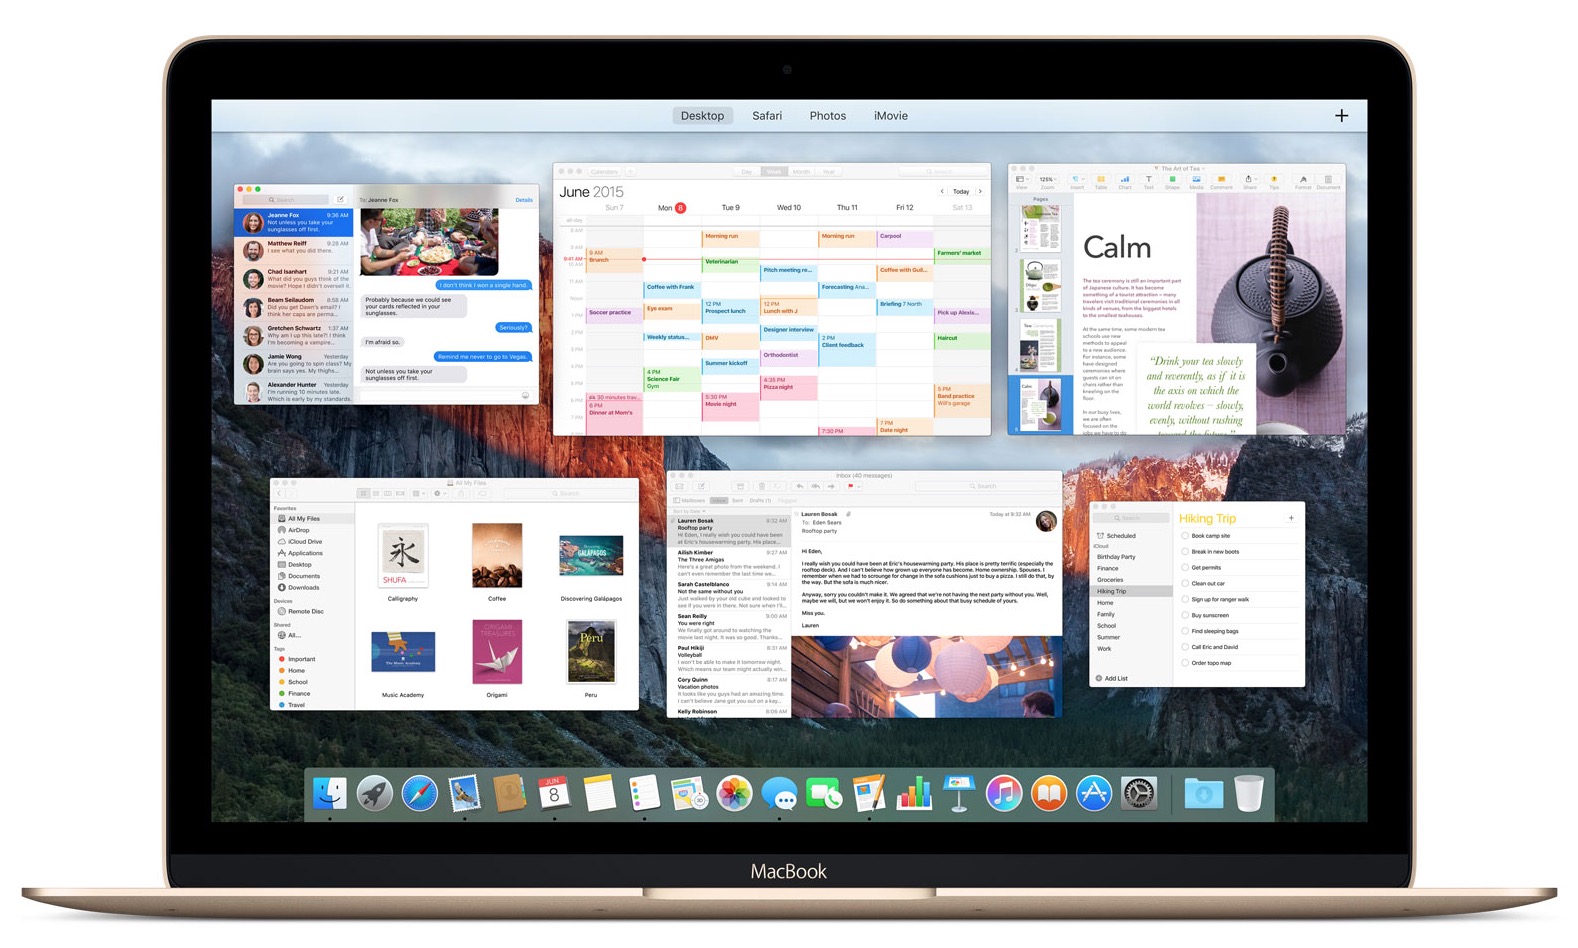 OS X El Capitan on a Mac